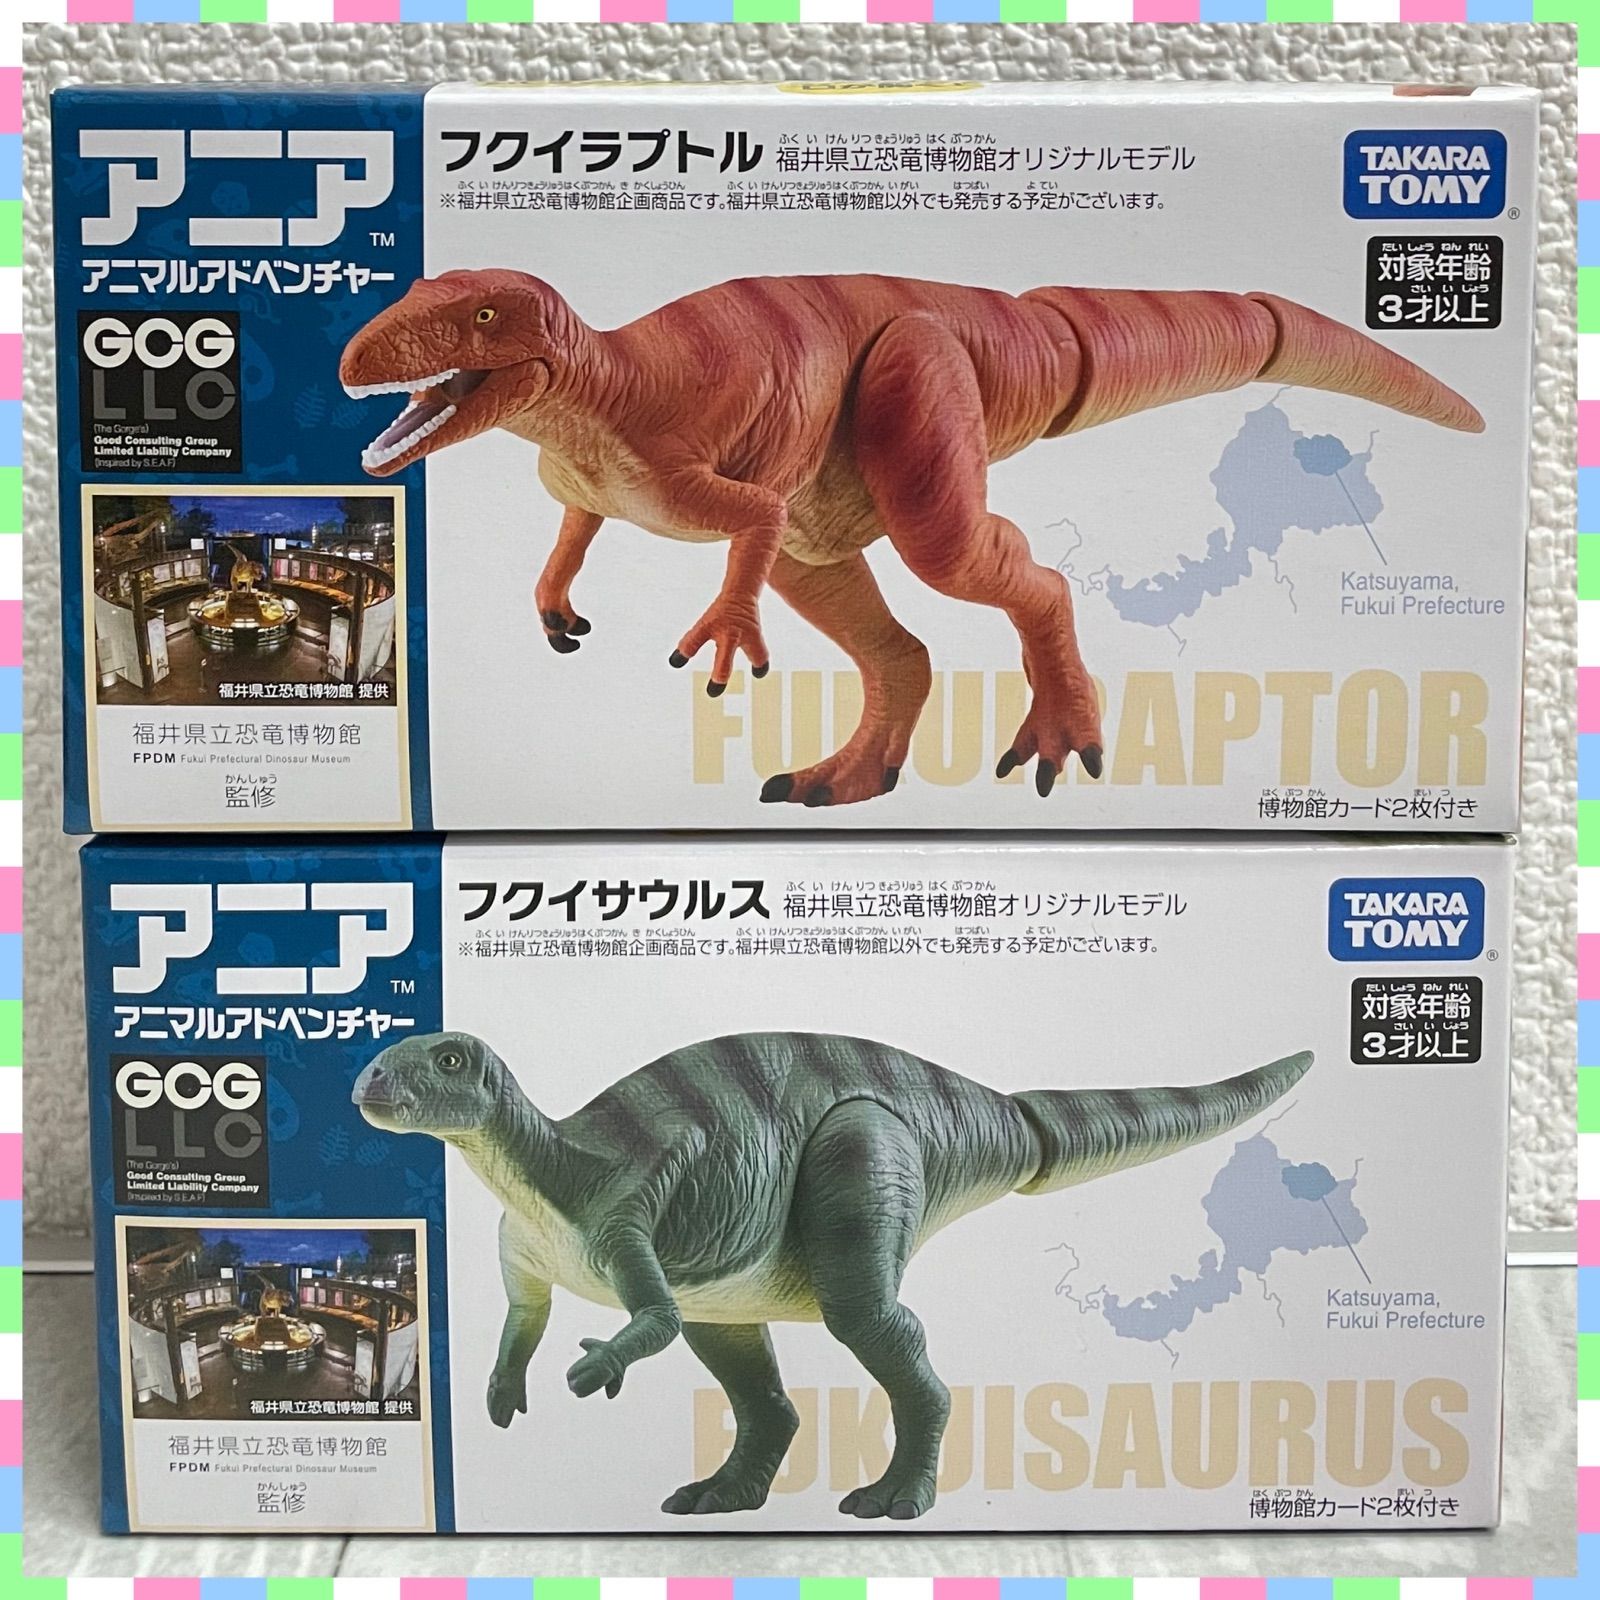 アニア 福井県立恐竜博物館 恐竜6個セット 新品 フクイラプトル